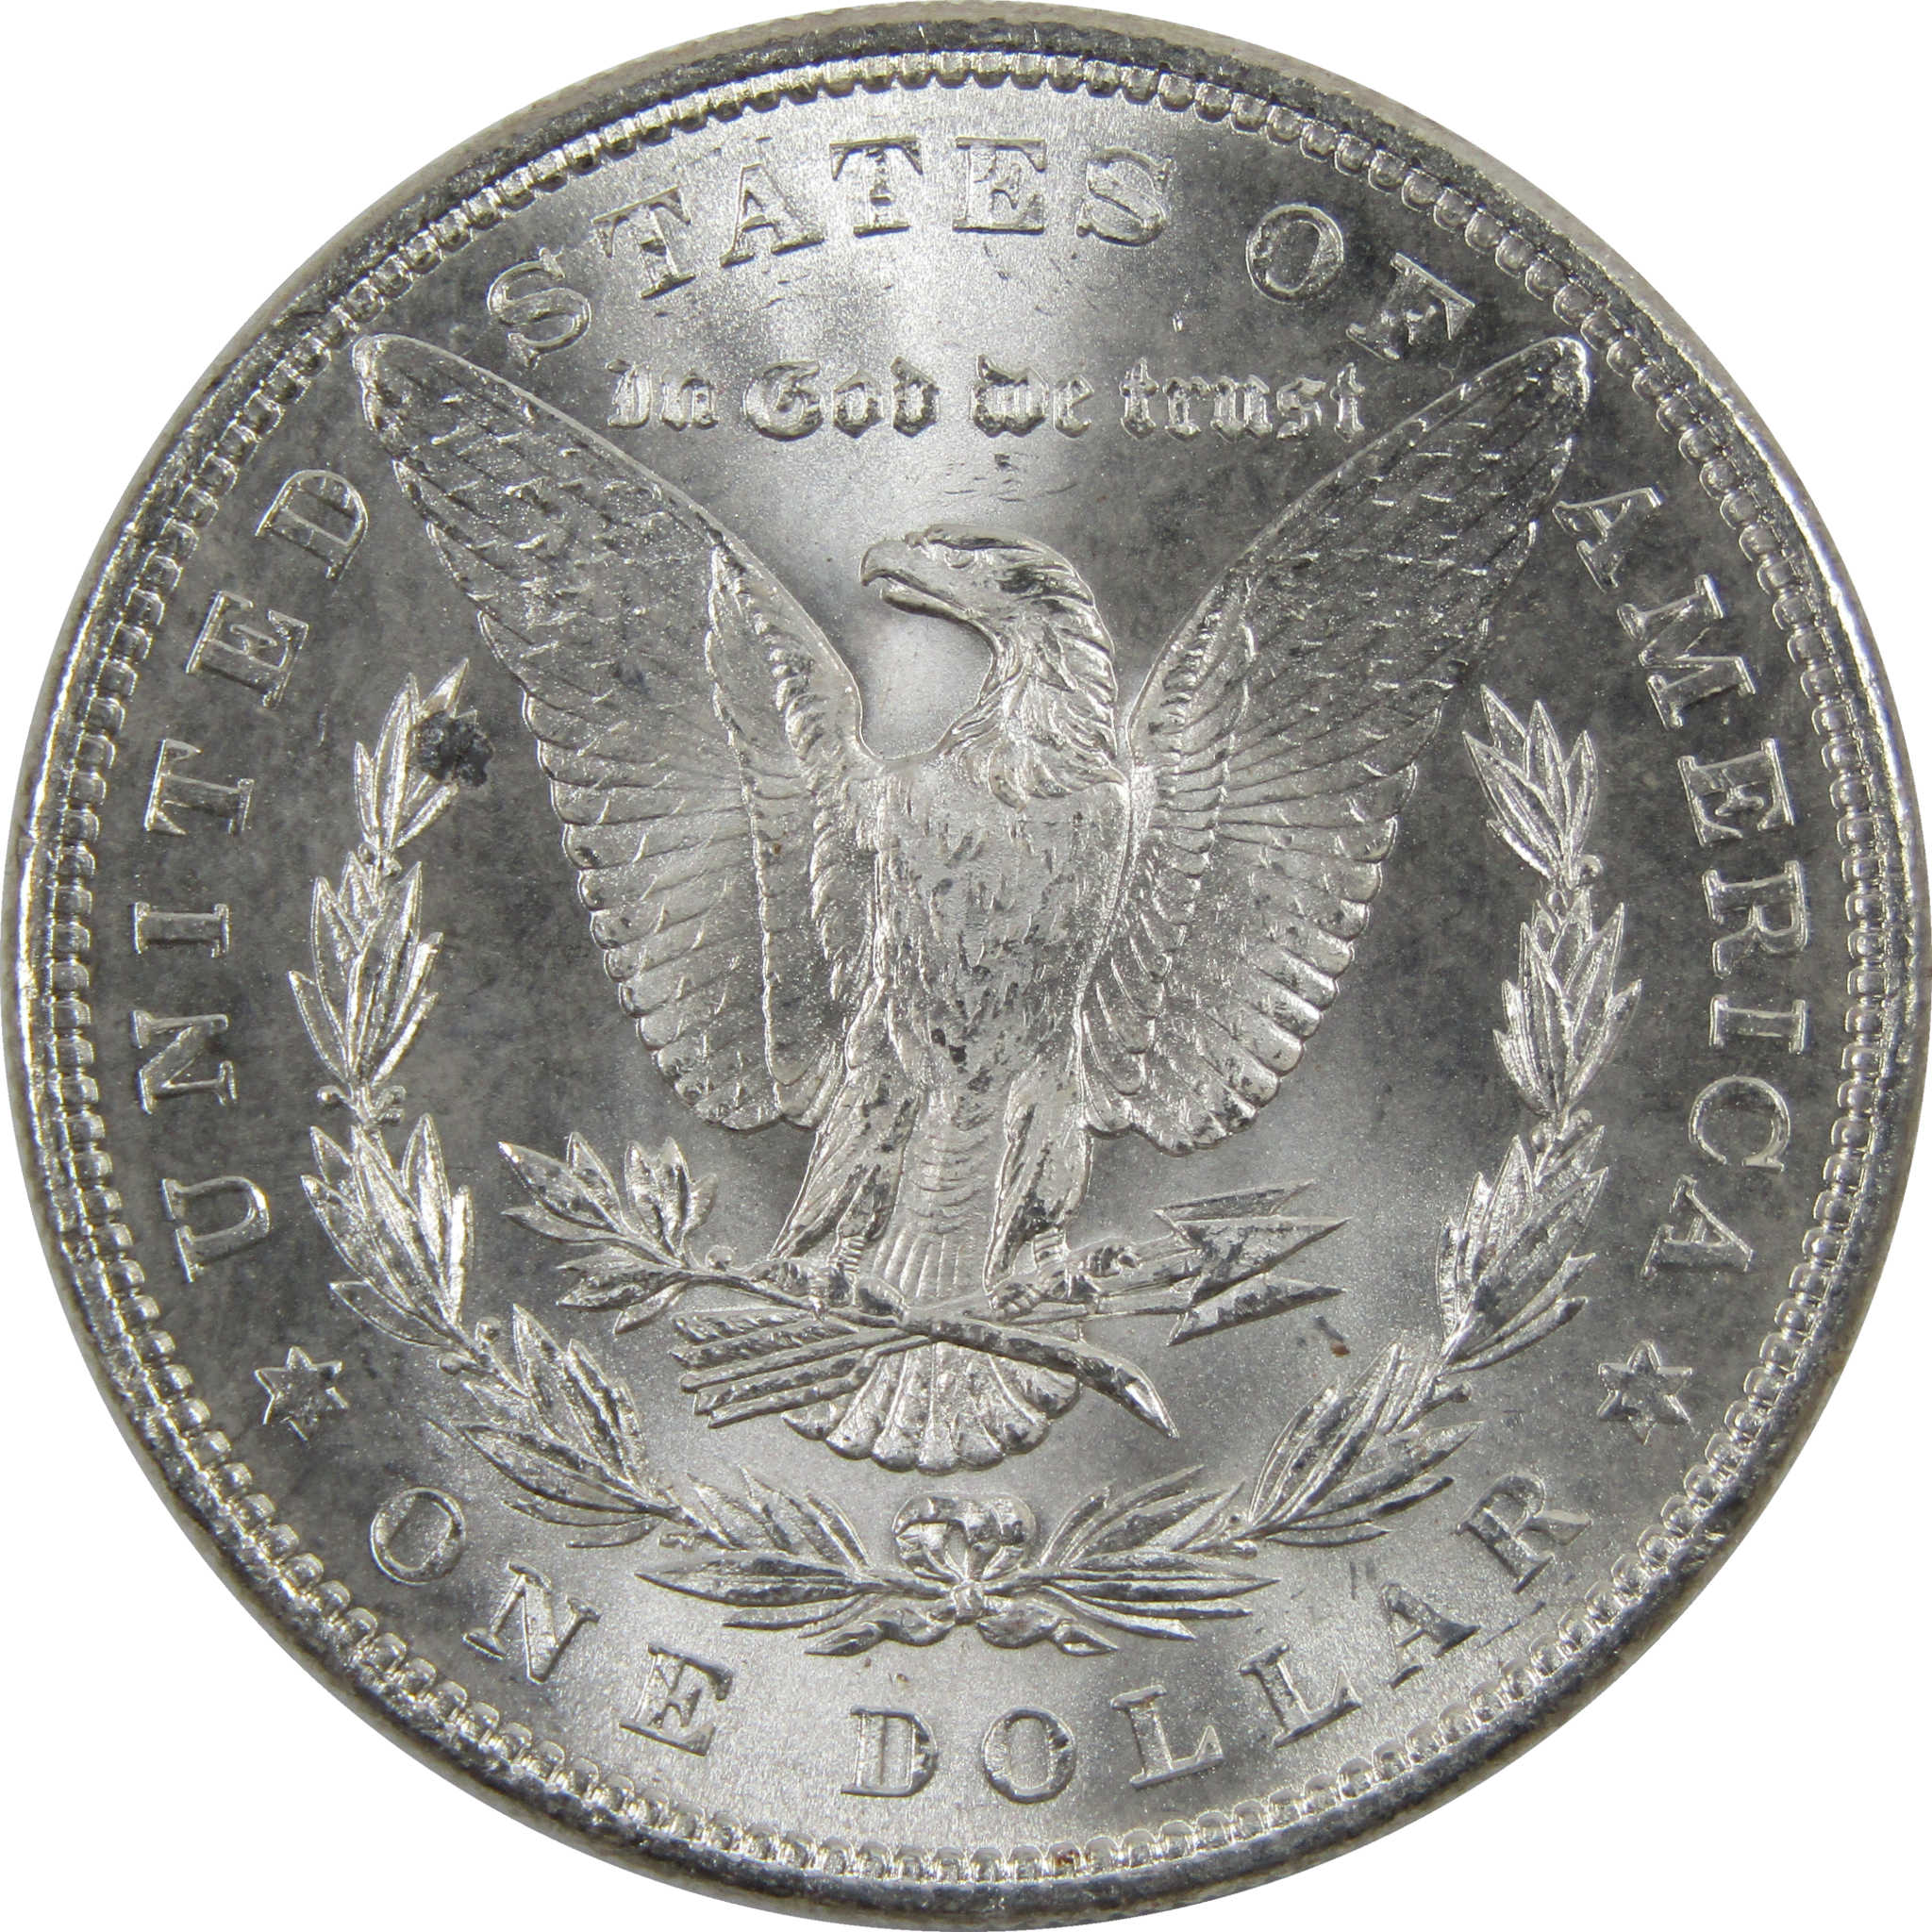 1884 Morgan Dollar BU Uncirculated 90% Silver $1 Coin SKU:I6009 - Morgan coin - Morgan silver dollar - Morgan silver dollar for sale - Profile Coins &amp; Collectibles